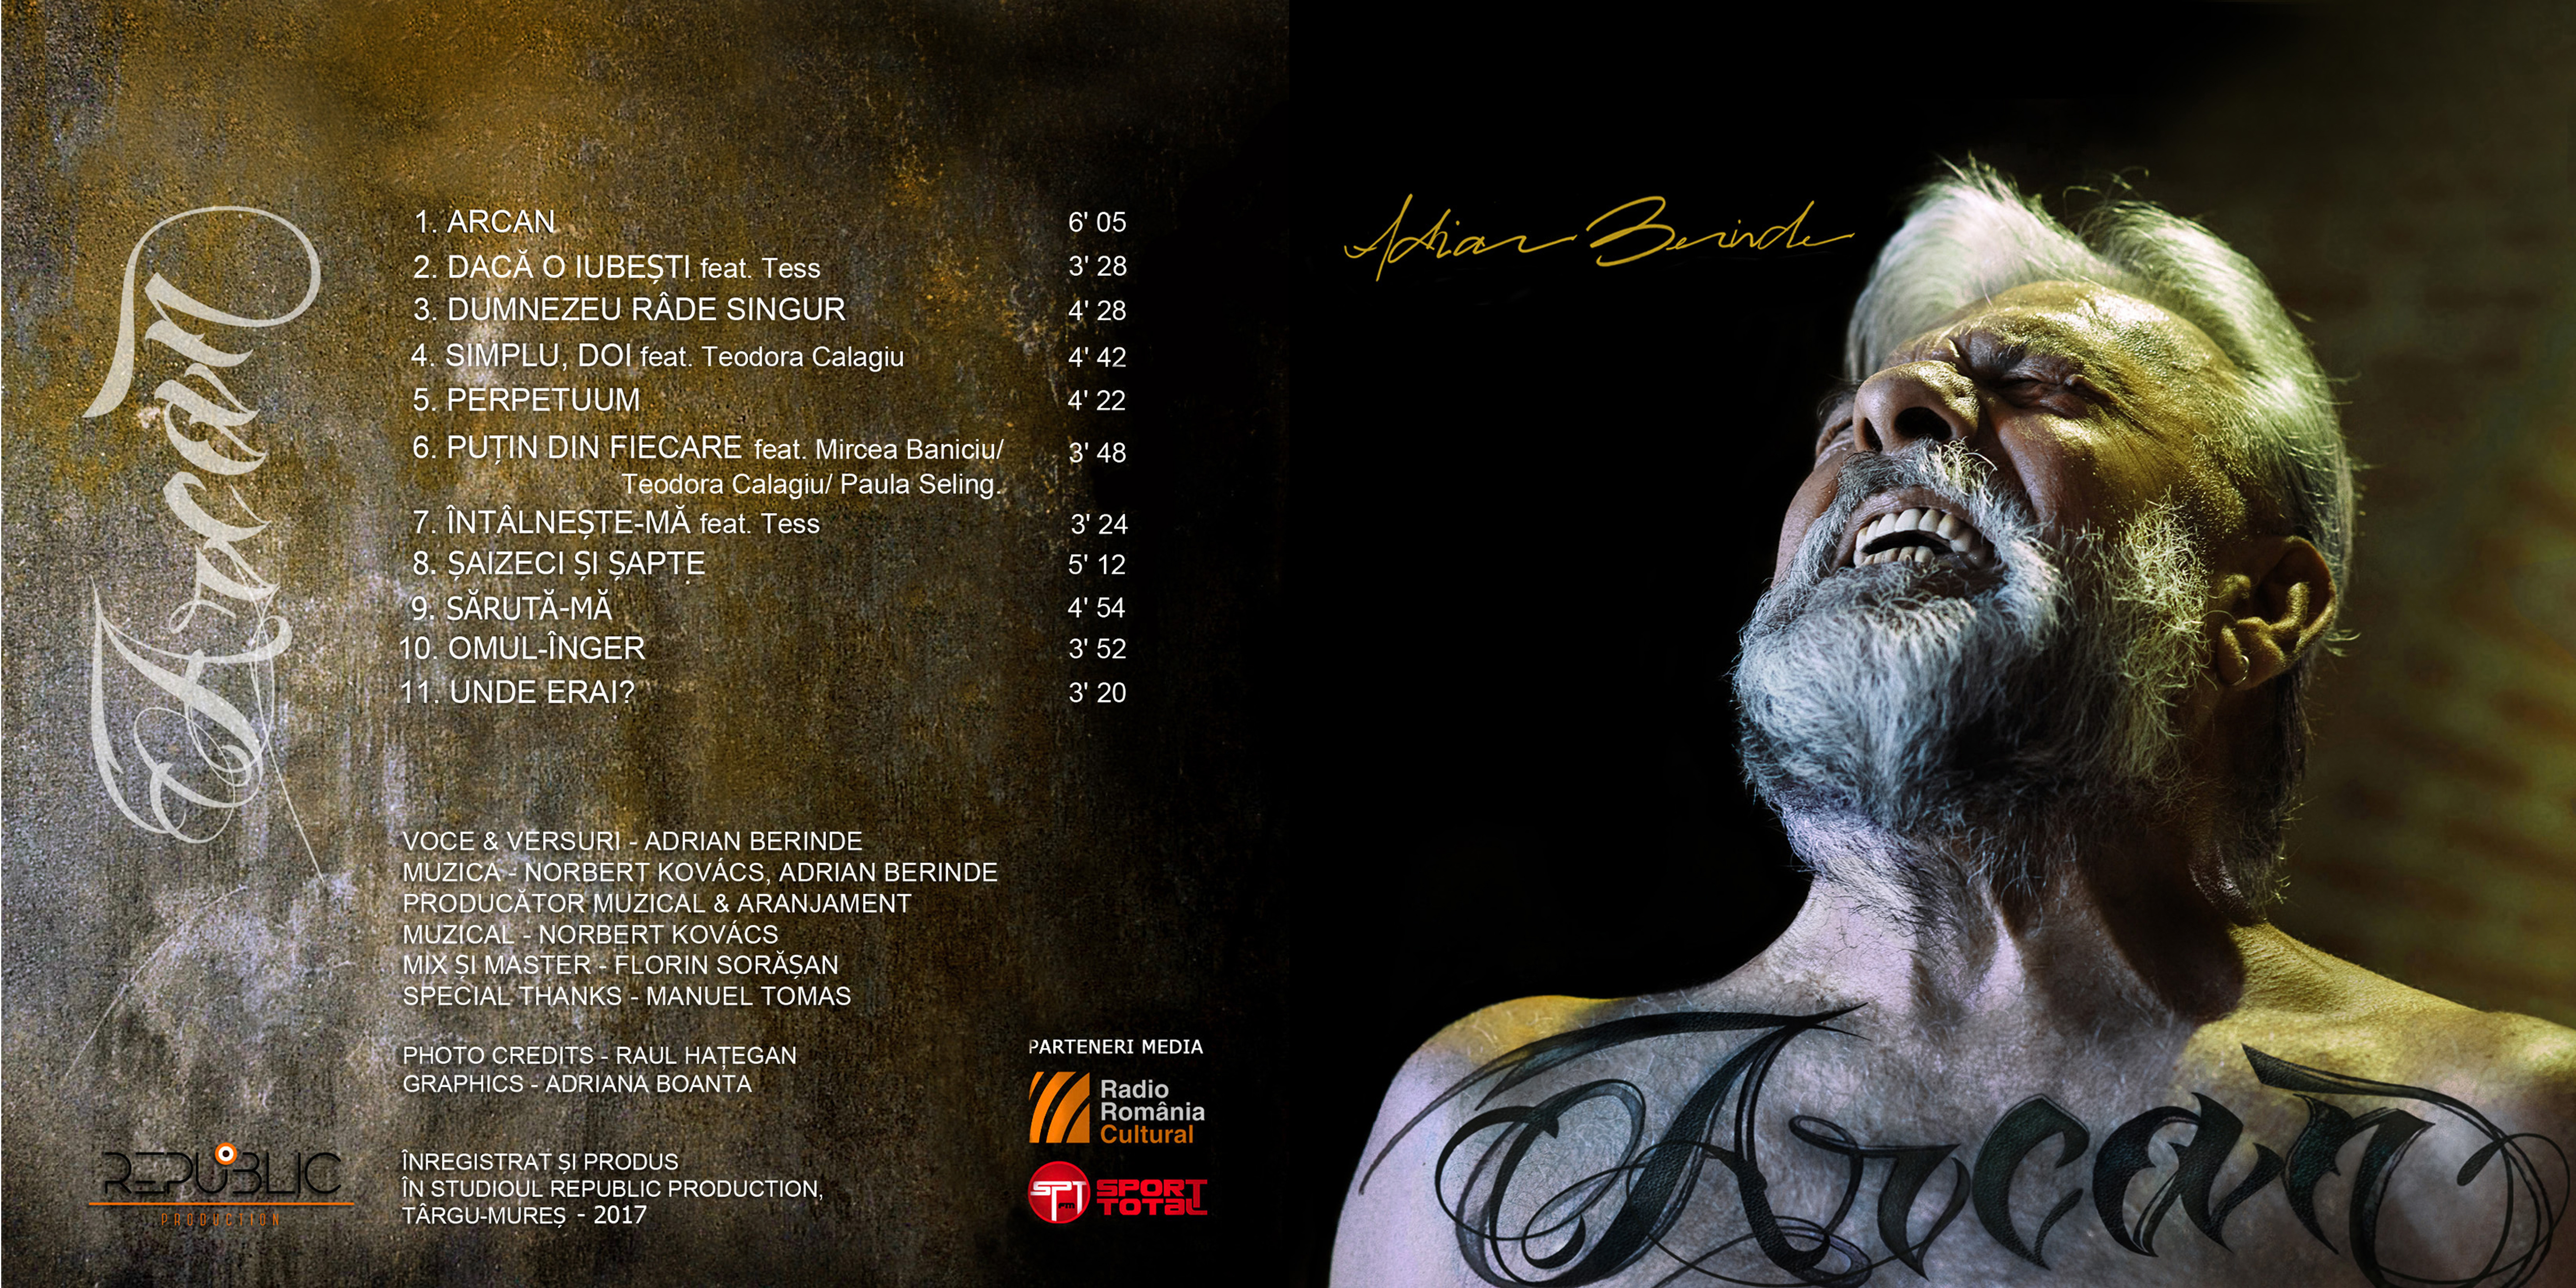 Coperta album Arcan, Adrian Berinde